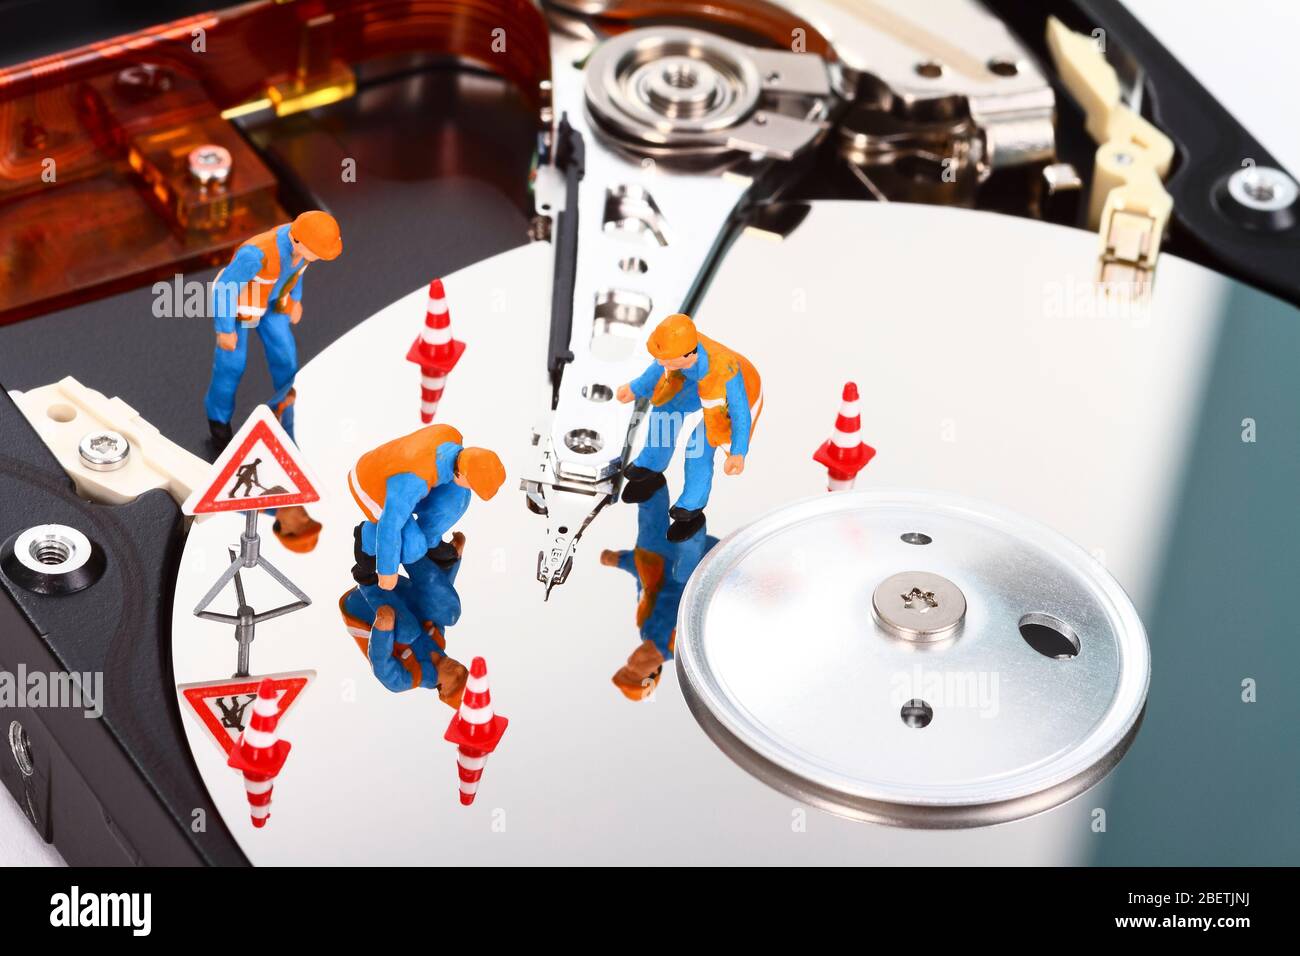 Image conceptuelle des personnes à figure miniature recherchant des problèmes sur un disque dur d'ordinateur Banque D'Images